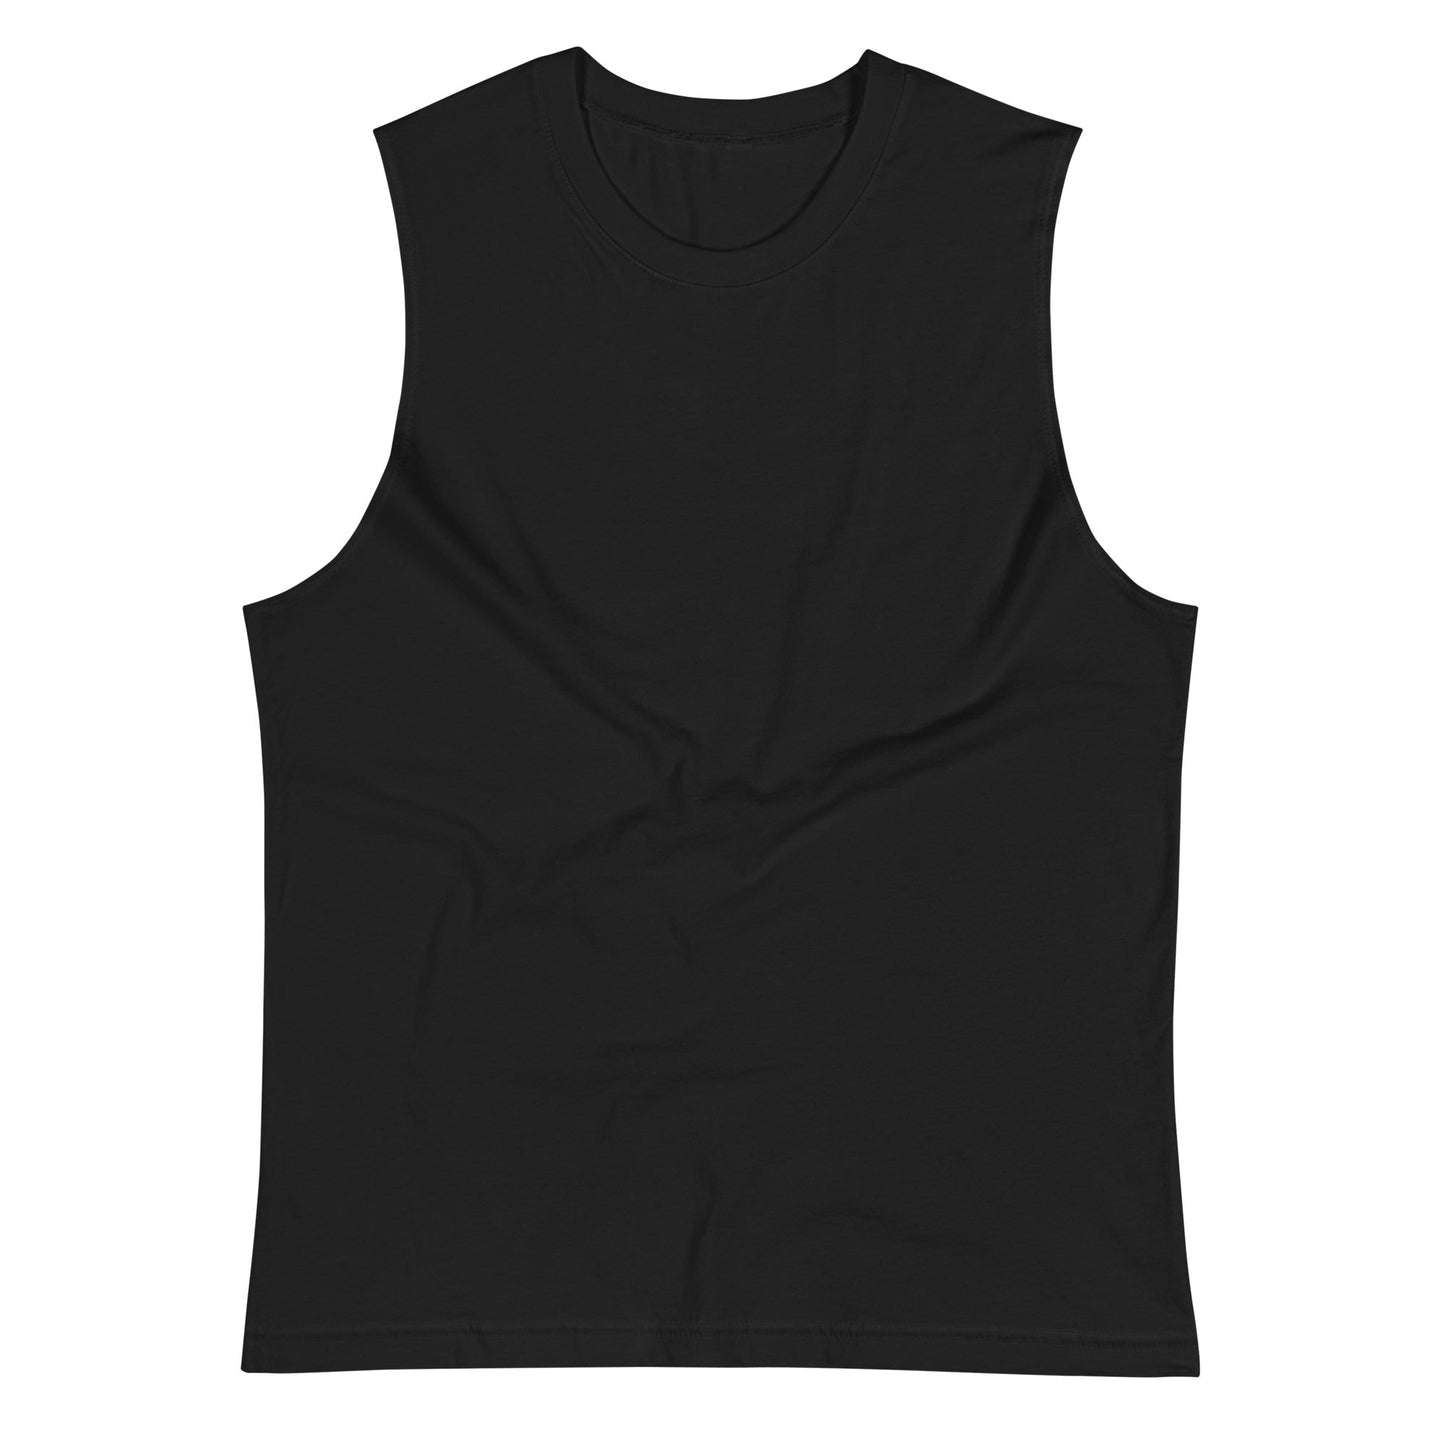 Camiseta Negra de Algodón Sin Mangas 3 Pack - Elegancia y calidad en nuestra insignia. Descubre la perfección del algodón premium importado.